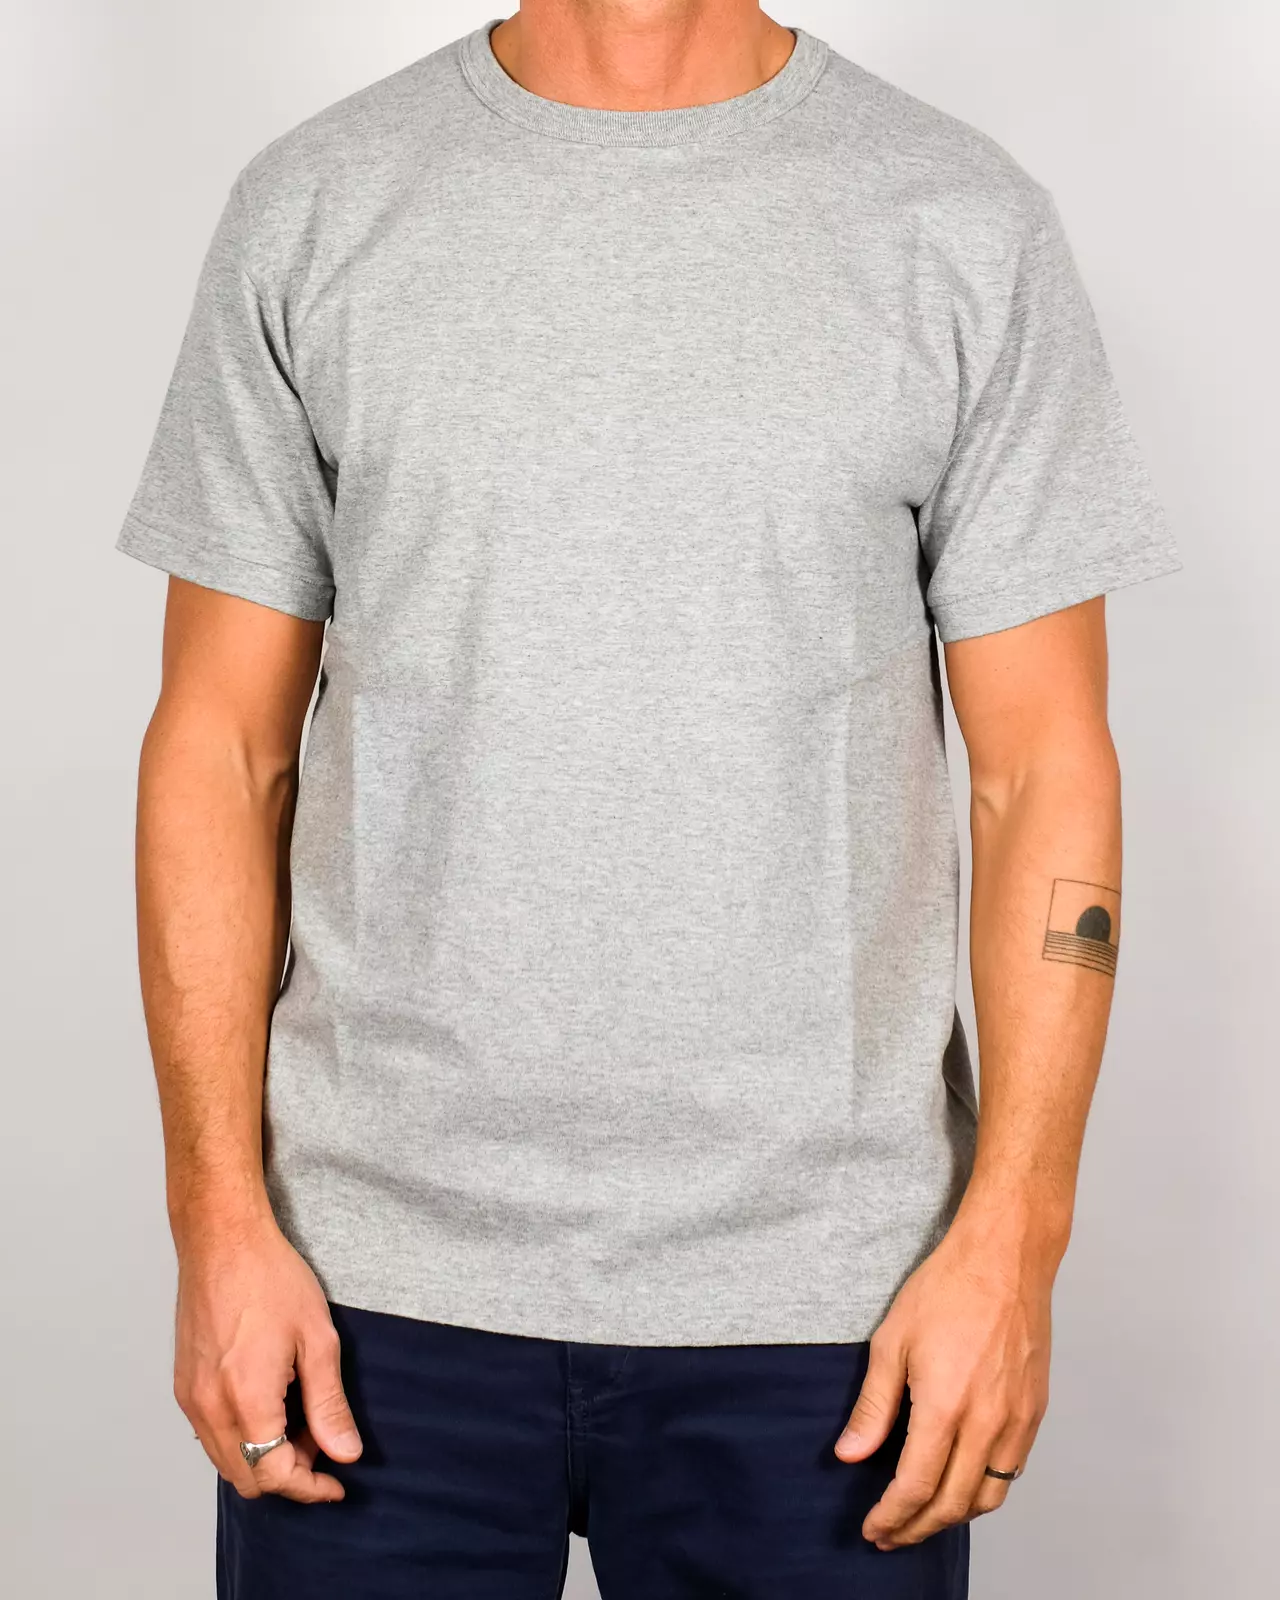 Haleiwa T-shirt - Hambledon Grey - M